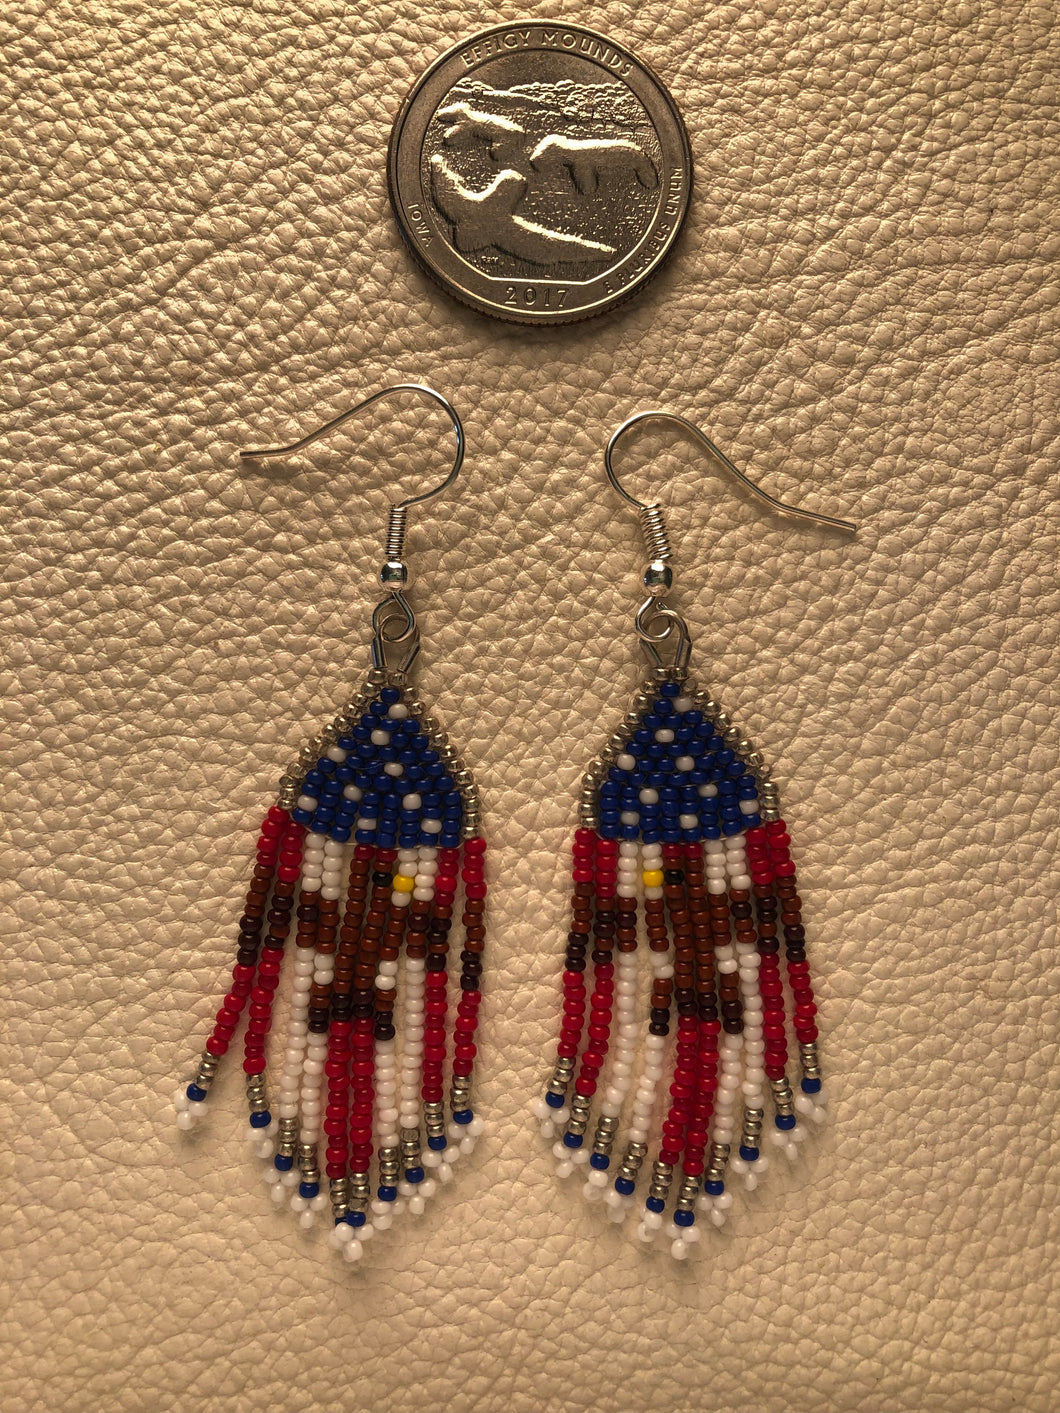 Beaded Patriotic Eagle Flag Earrings